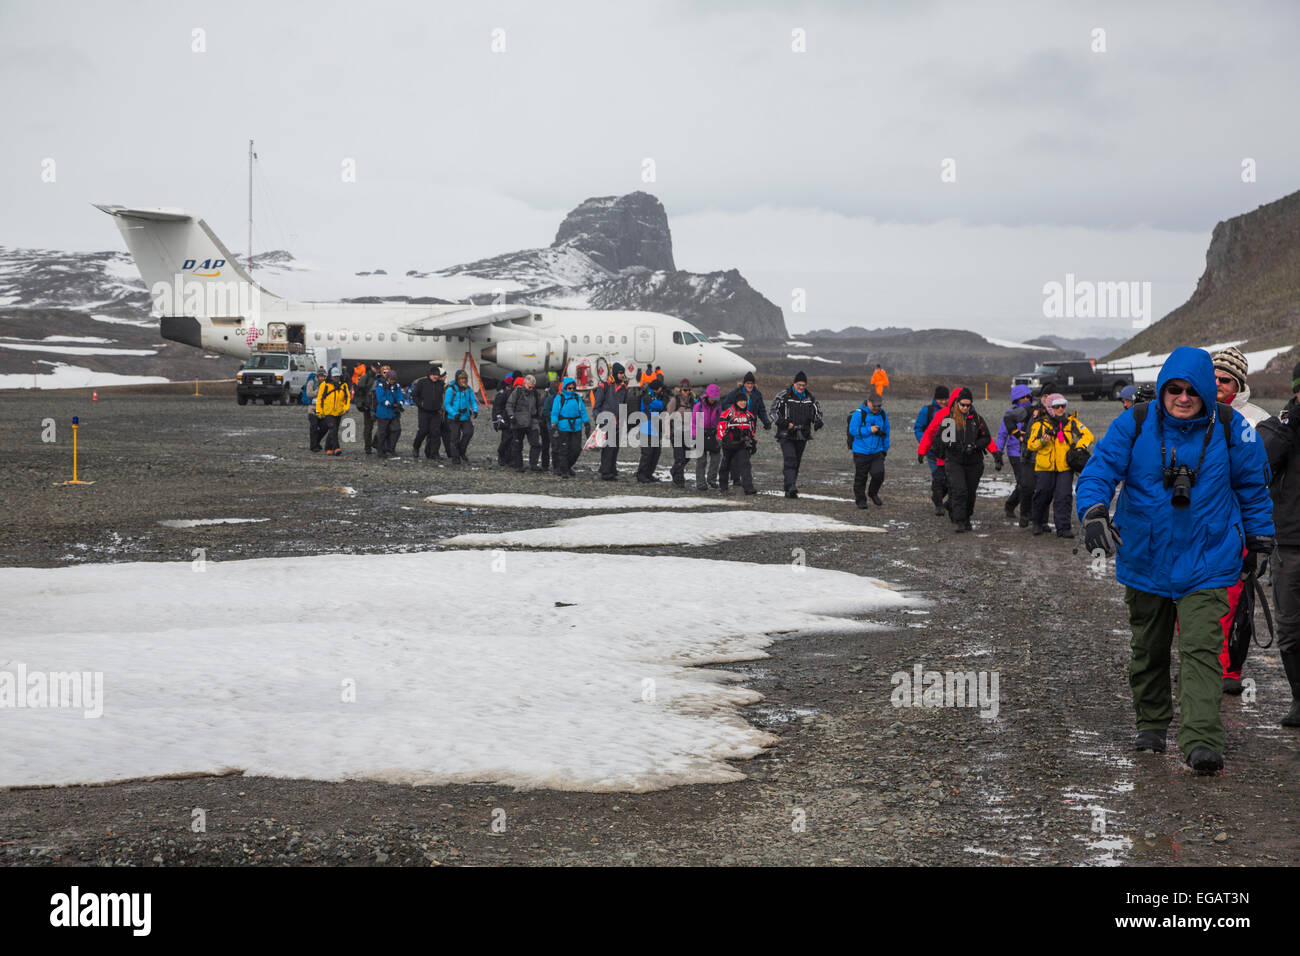 I partecipanti nella foto spedizione lo sbarco in corrispondenza di Frei Stazione, sull'isola King George, in Antartide Foto Stock